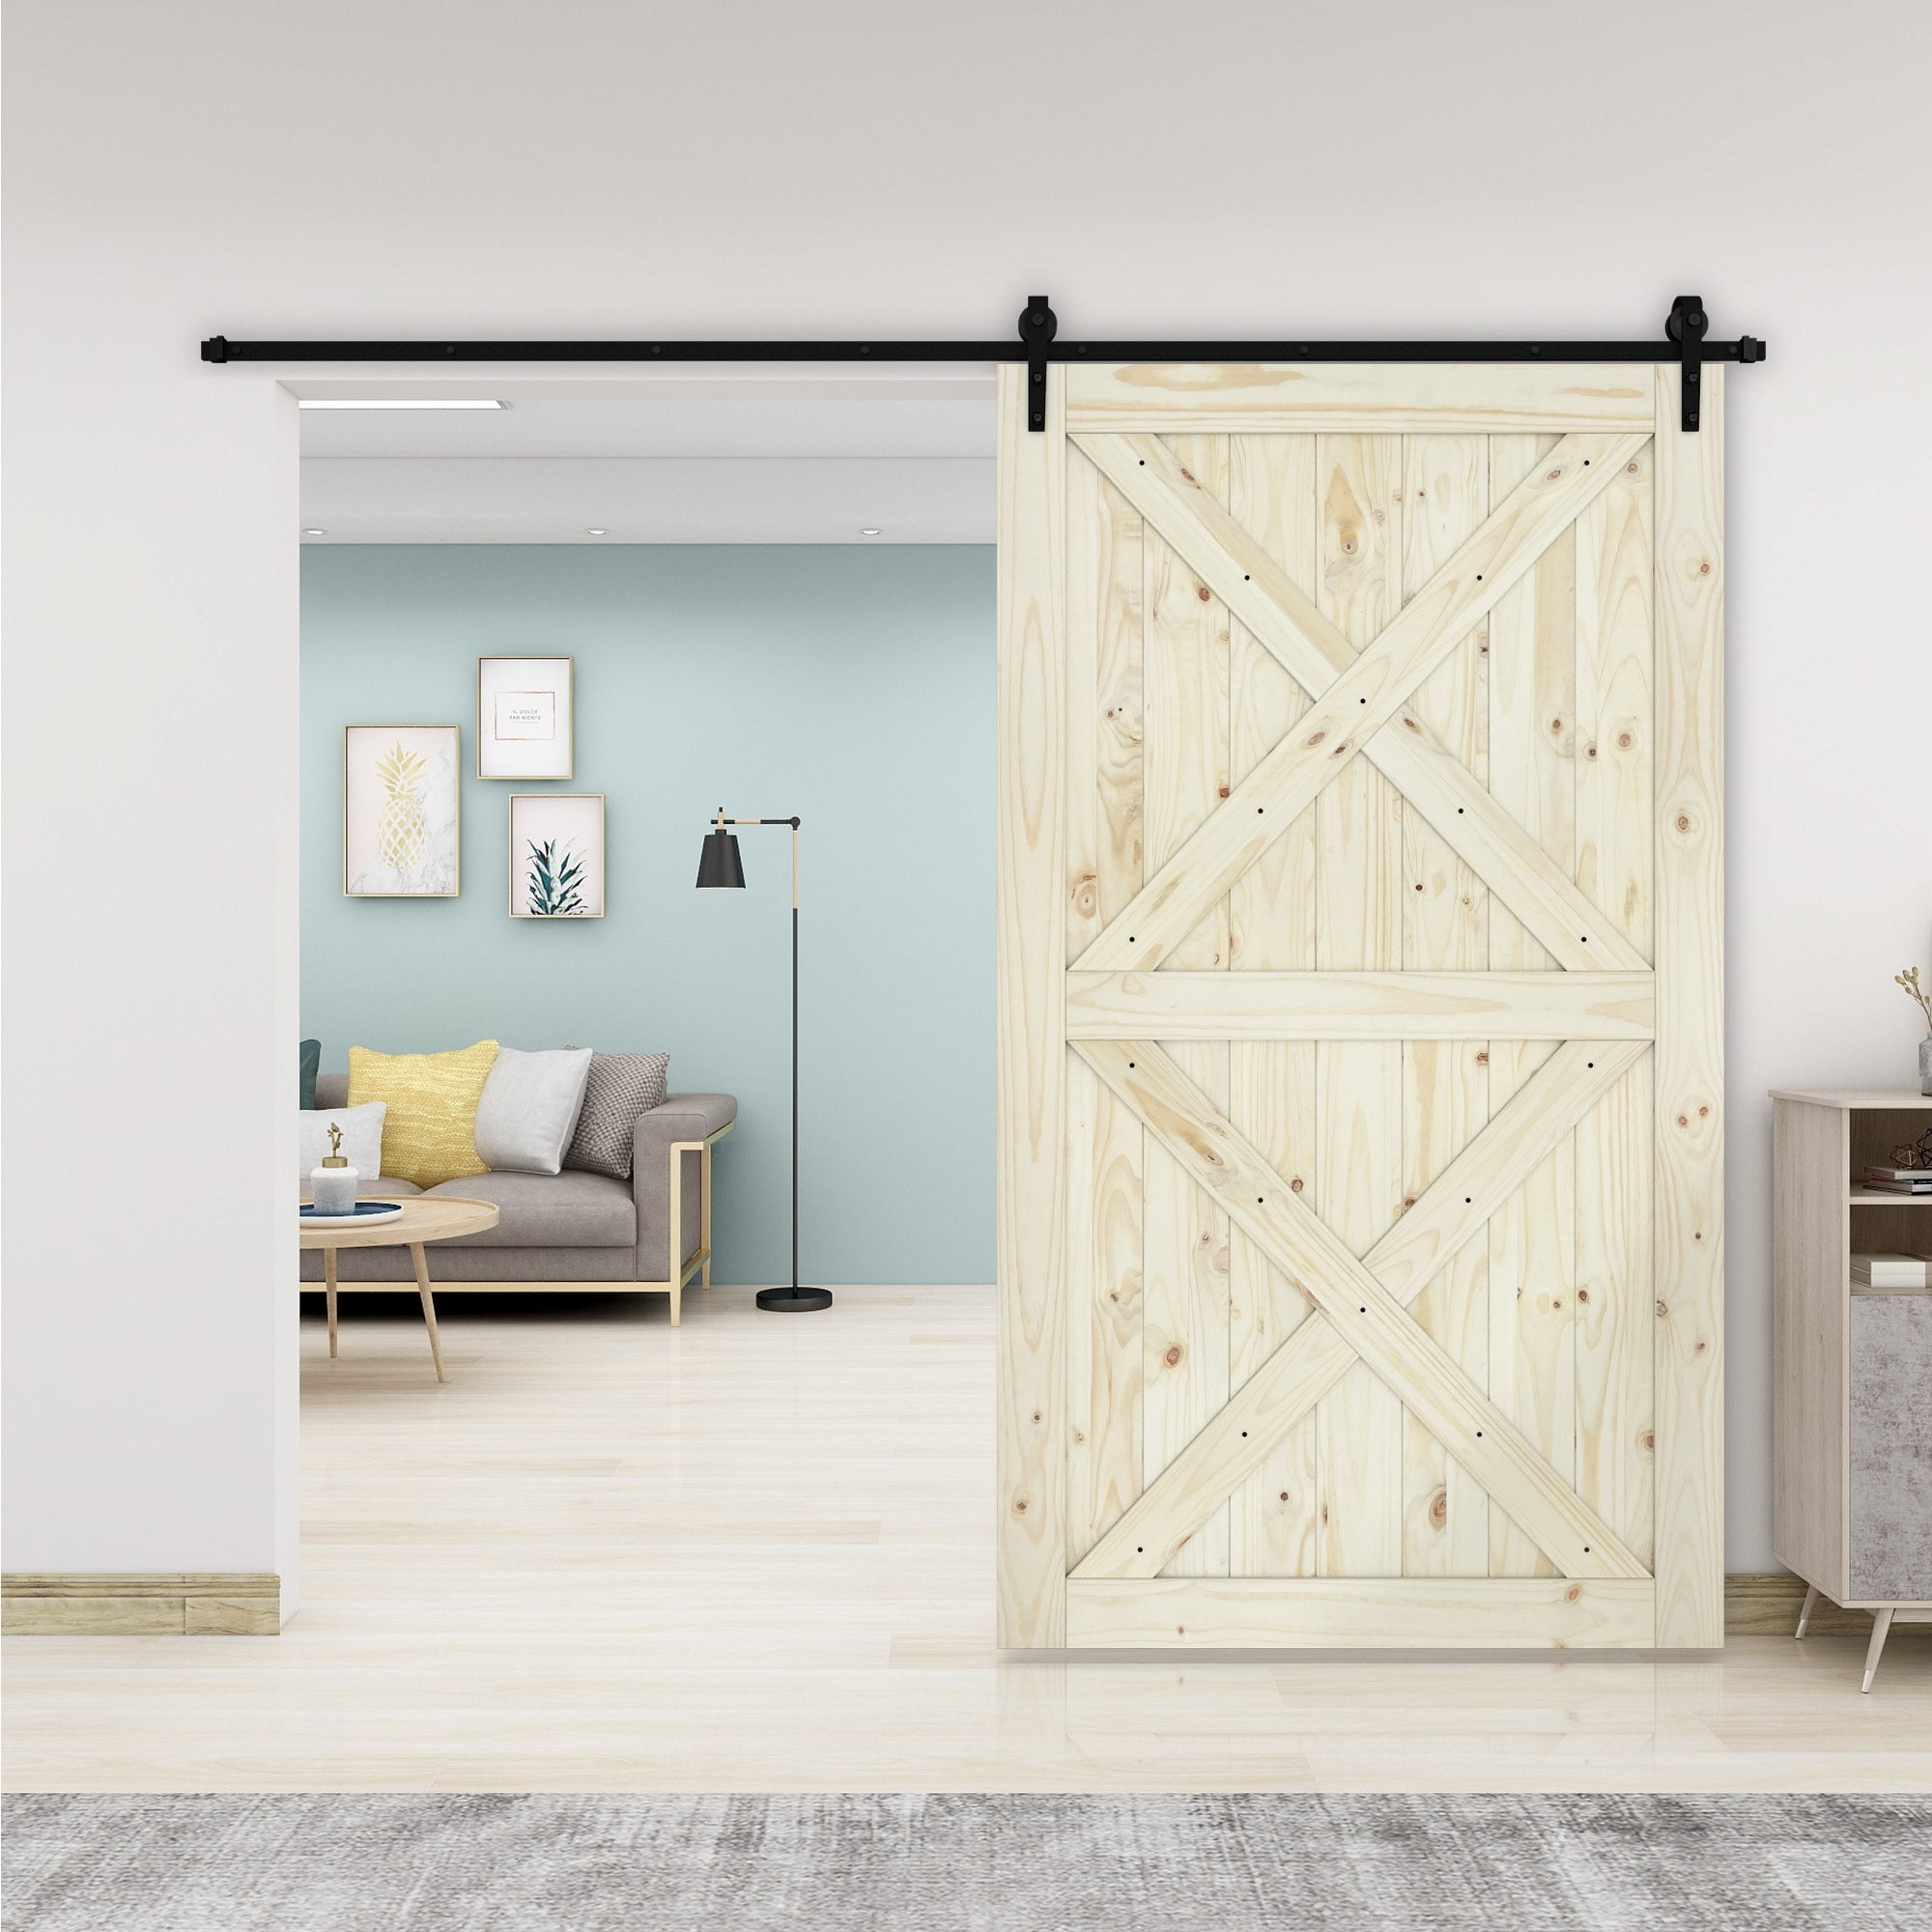 12 Cool Barn Door Closet Ideas You Can DIY  Diy barn door, Sliding closet  doors, Sliding barn door hardware